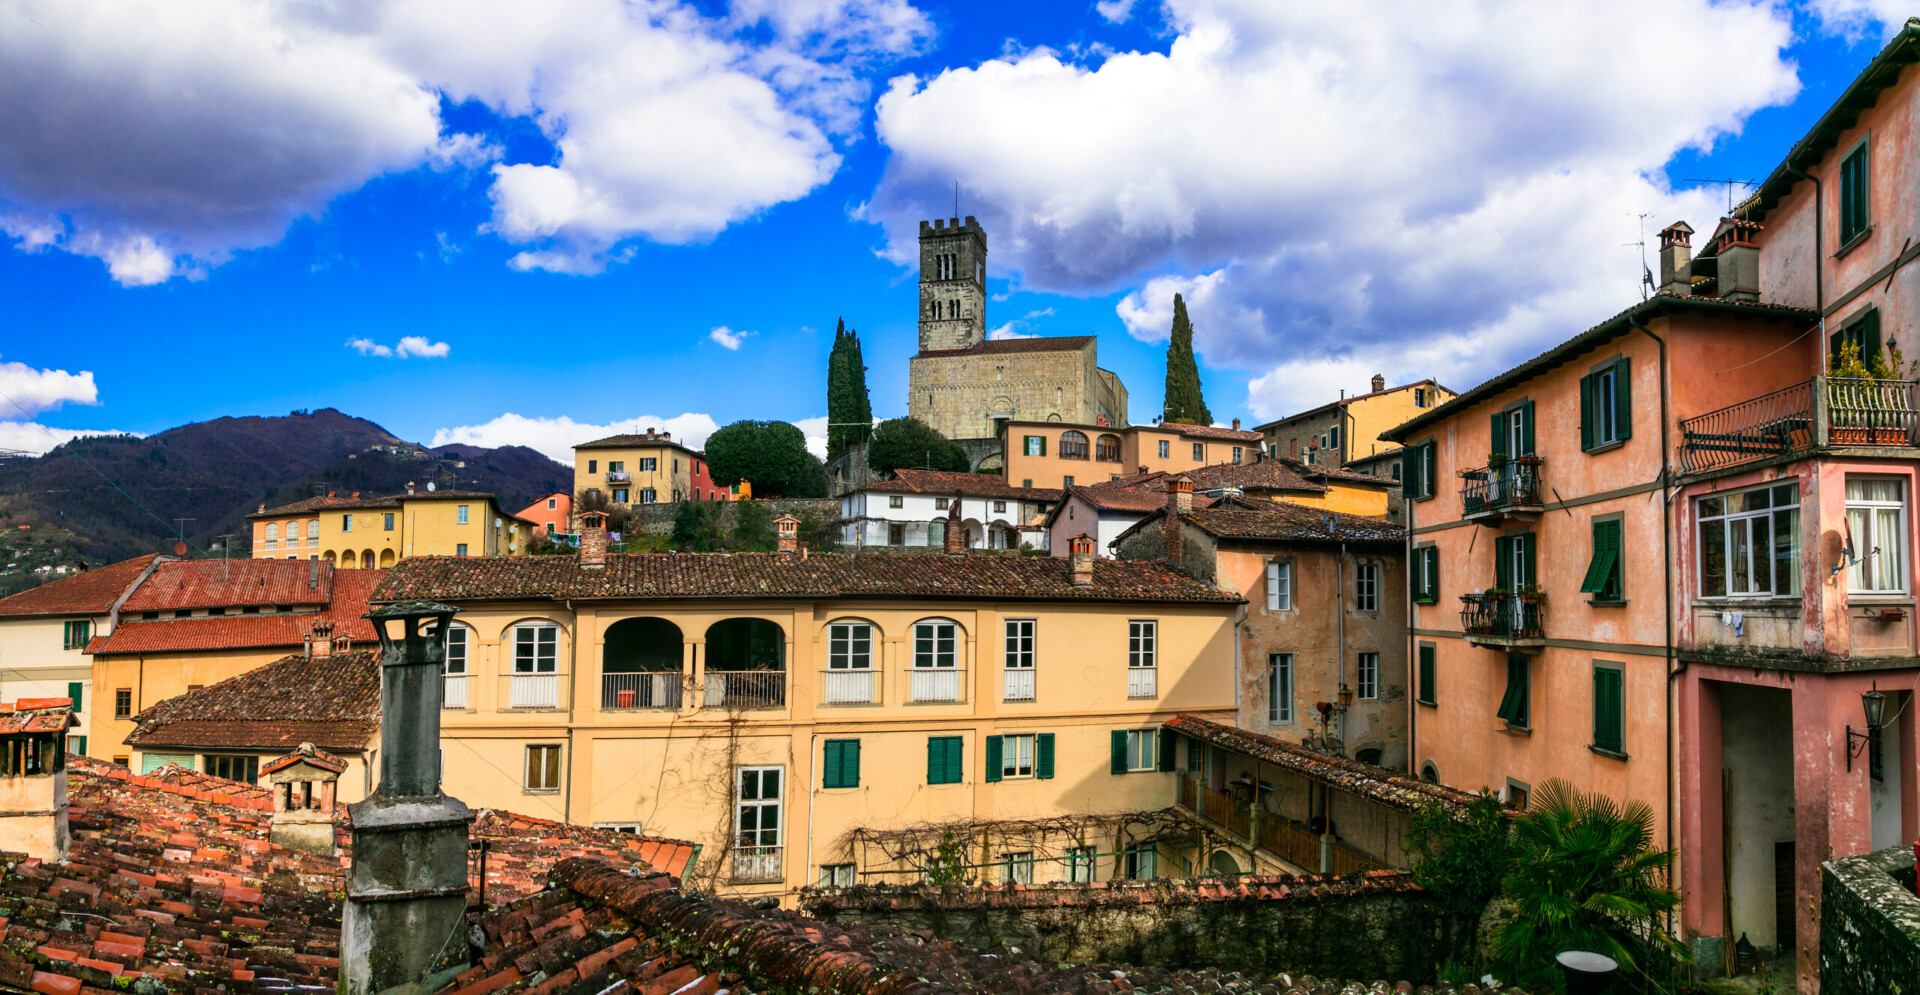 Castiglione di Garfagnana village, Lucca, Tuscany, Italy